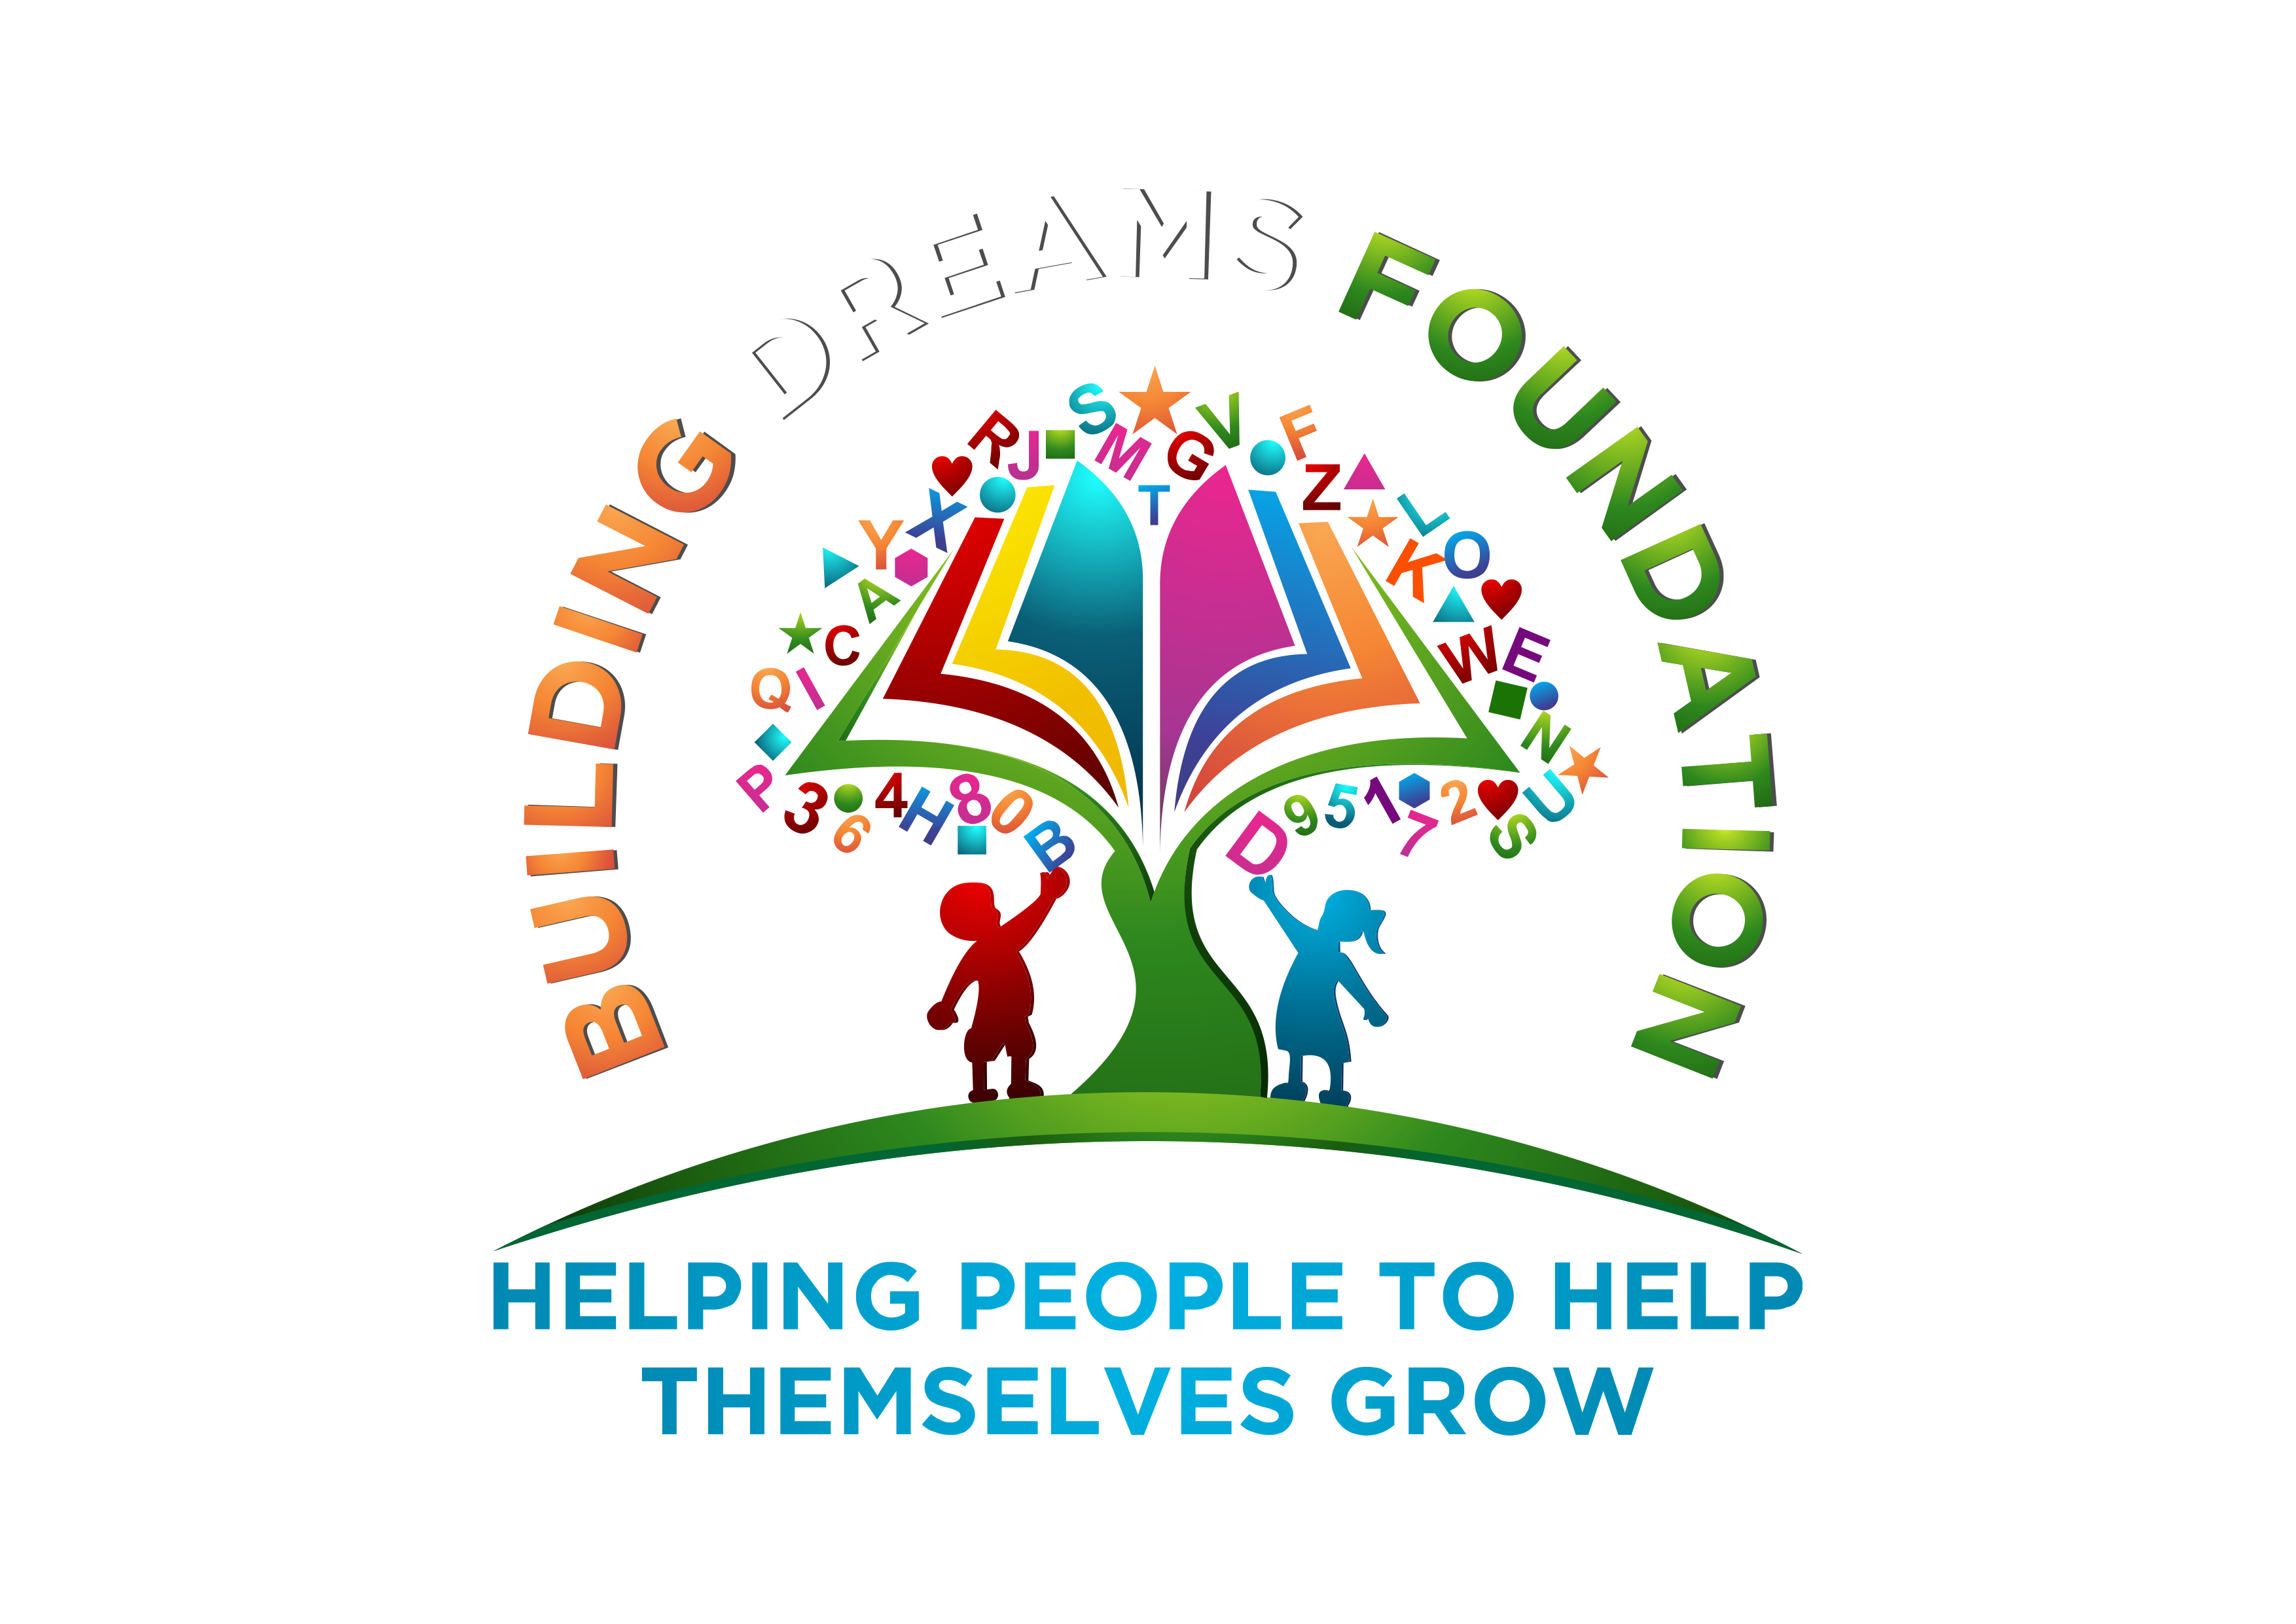 Building Dreams Foundation